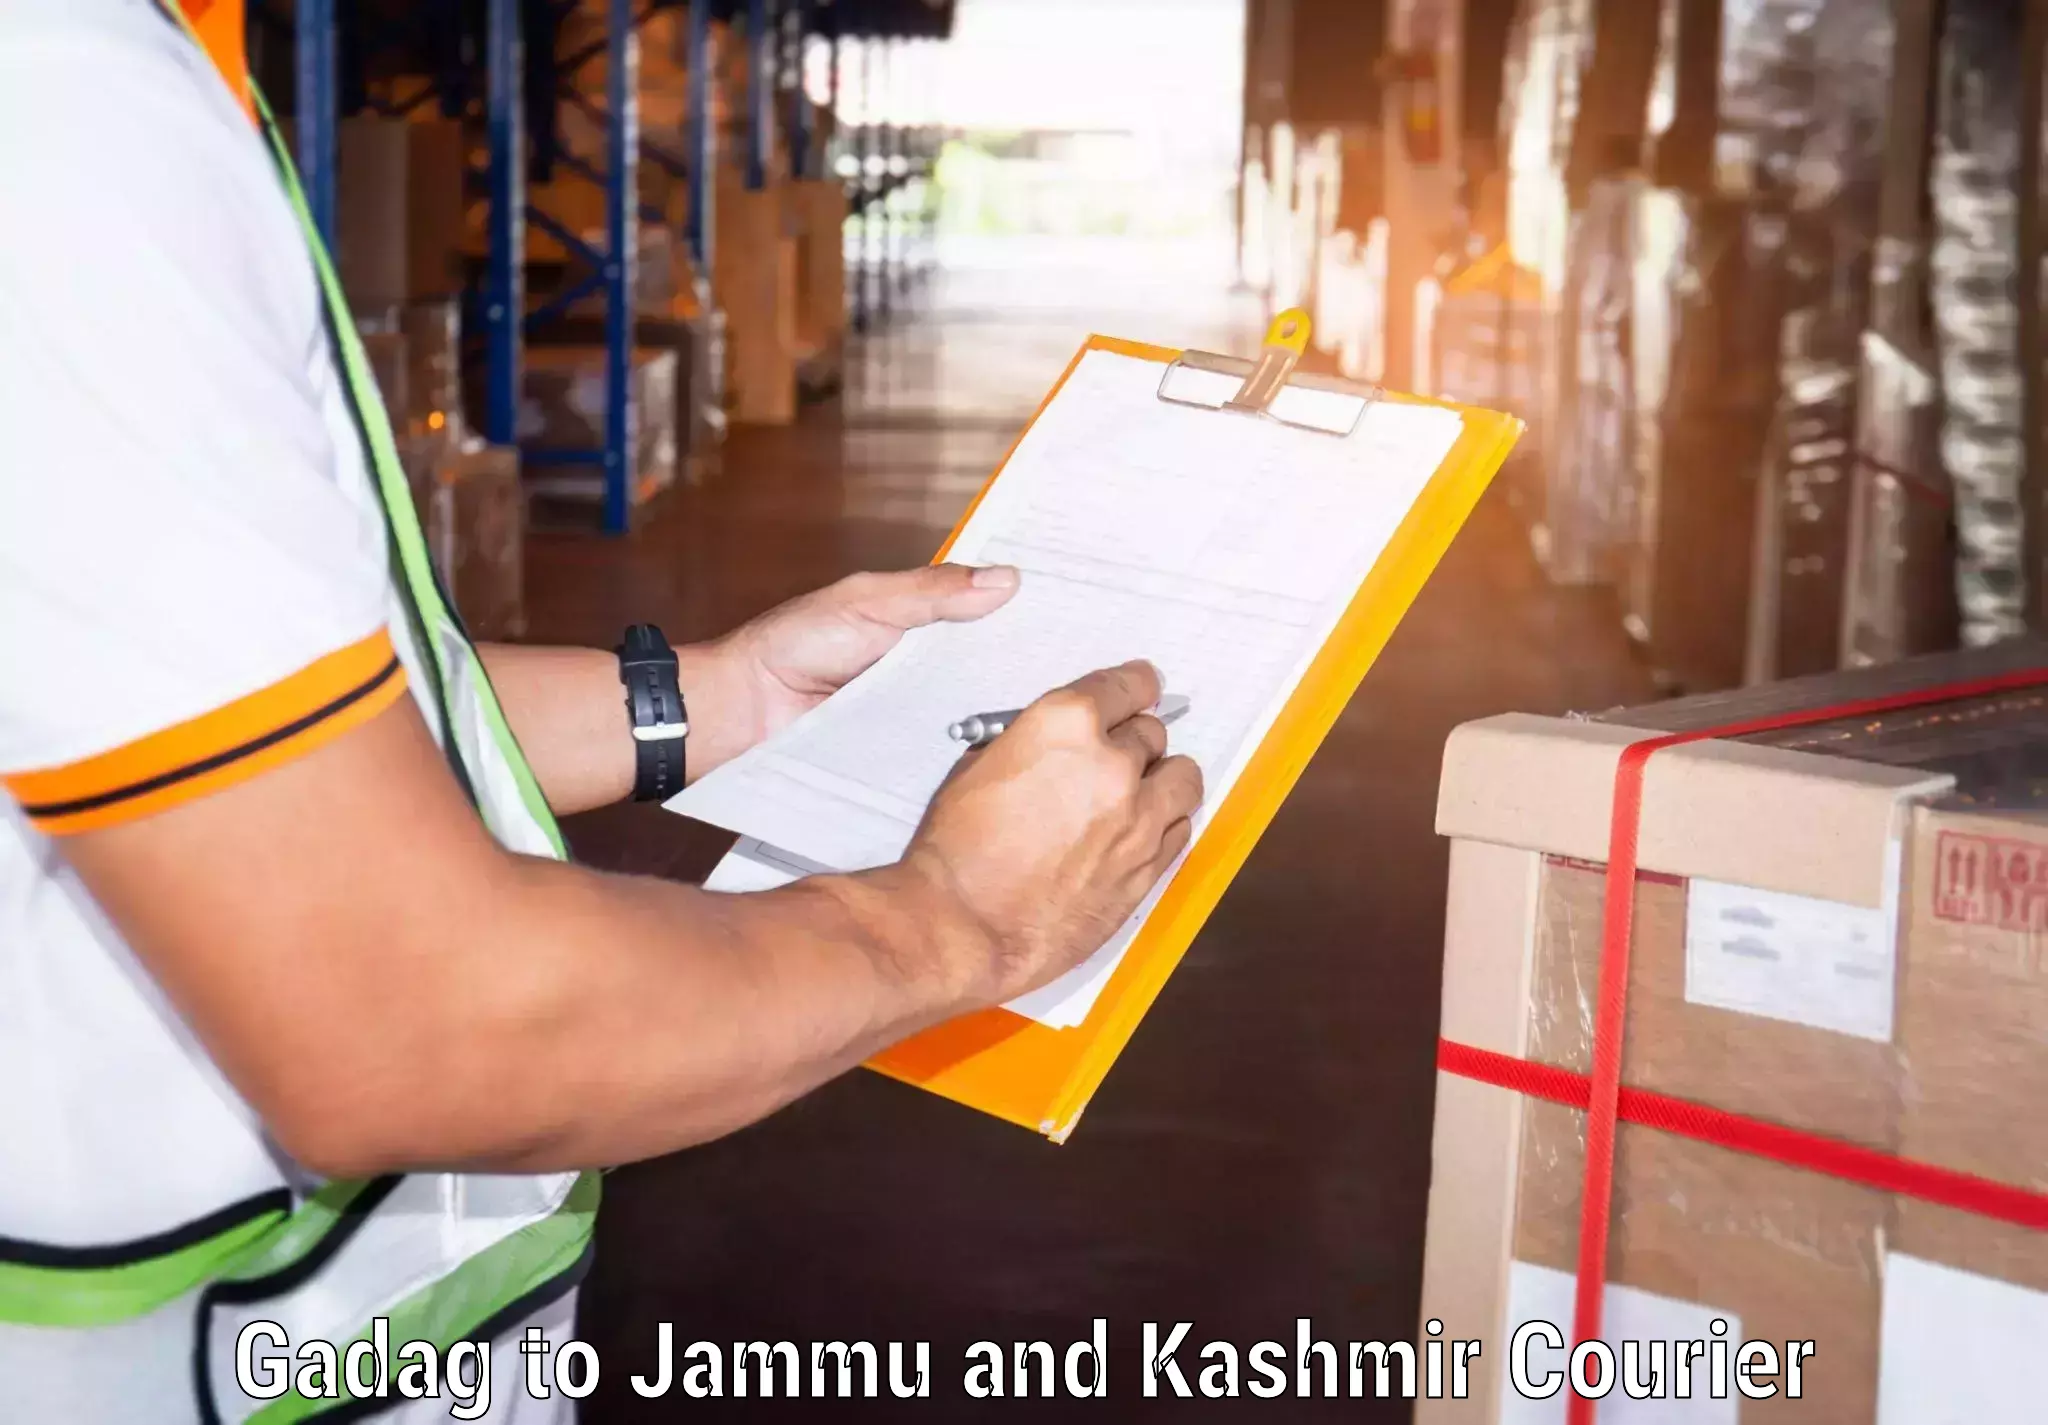 24-hour delivery options Gadag to Kishtwar